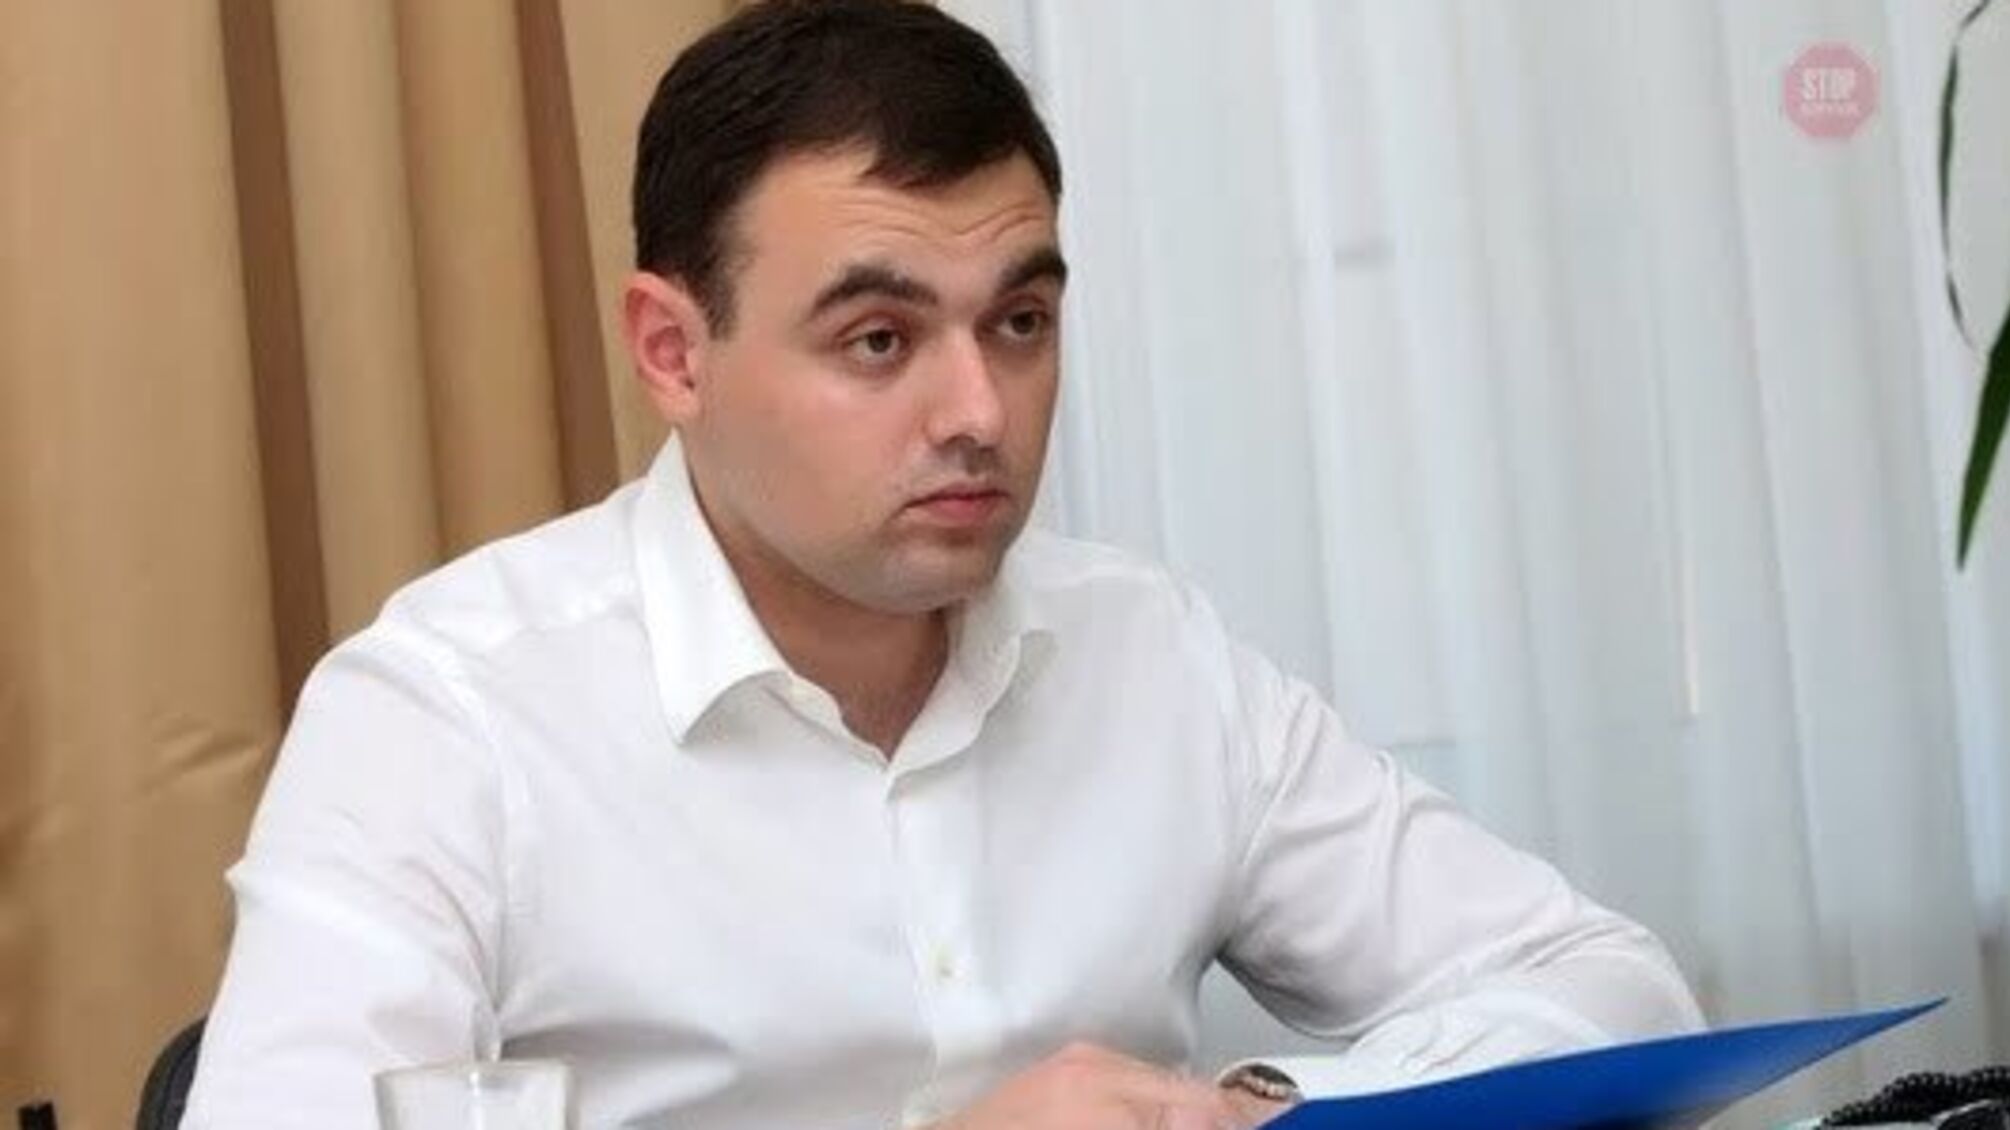 Мішалови сплатять 5 мільйонів гривень місту: дніпровські активісти відстояли справедливість